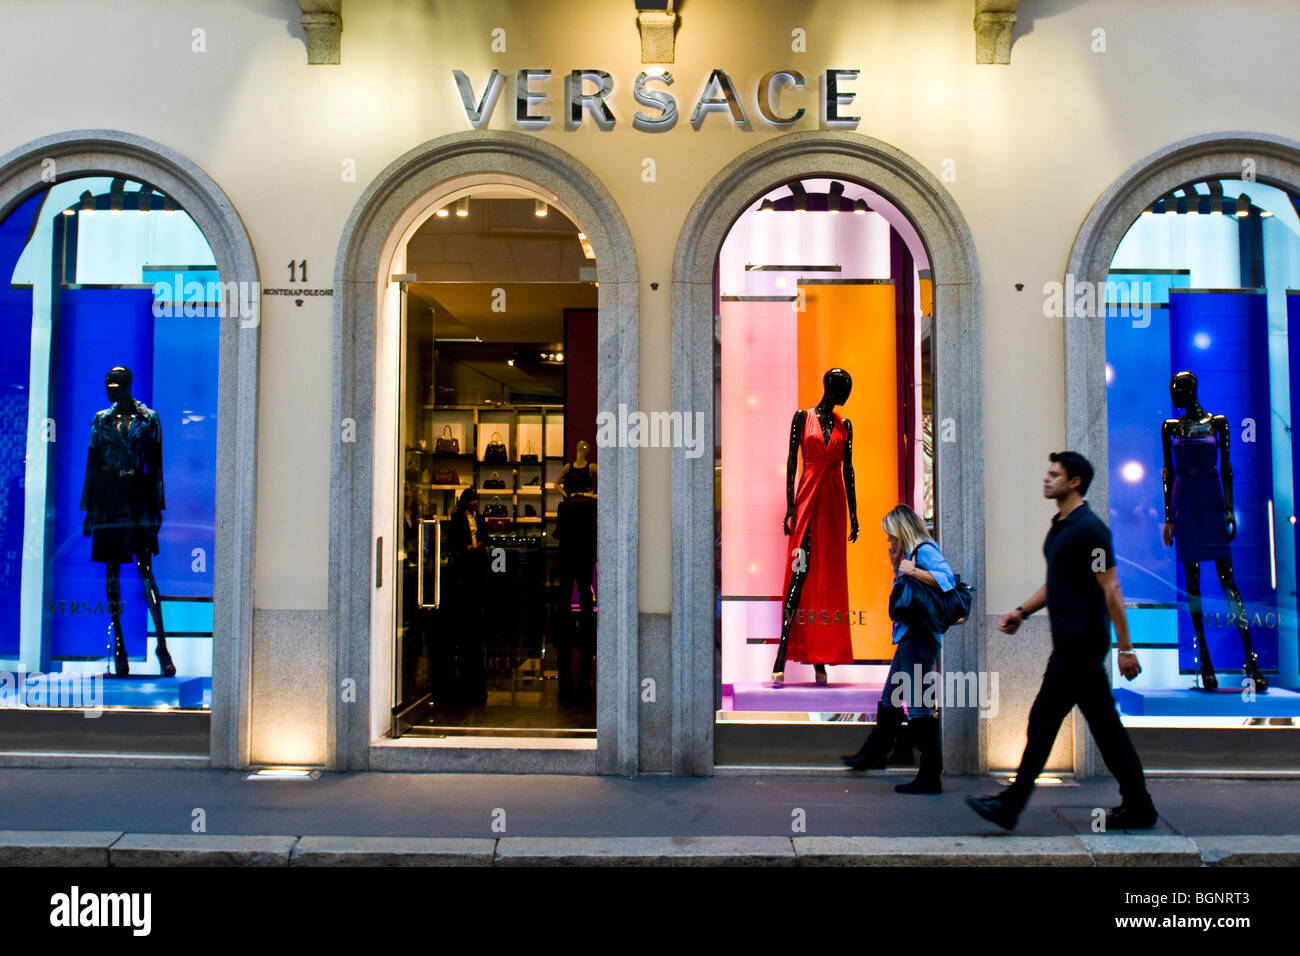 Versace, Via Montenapoleone, Montenapoleone street, Milan, Italy Stock ...